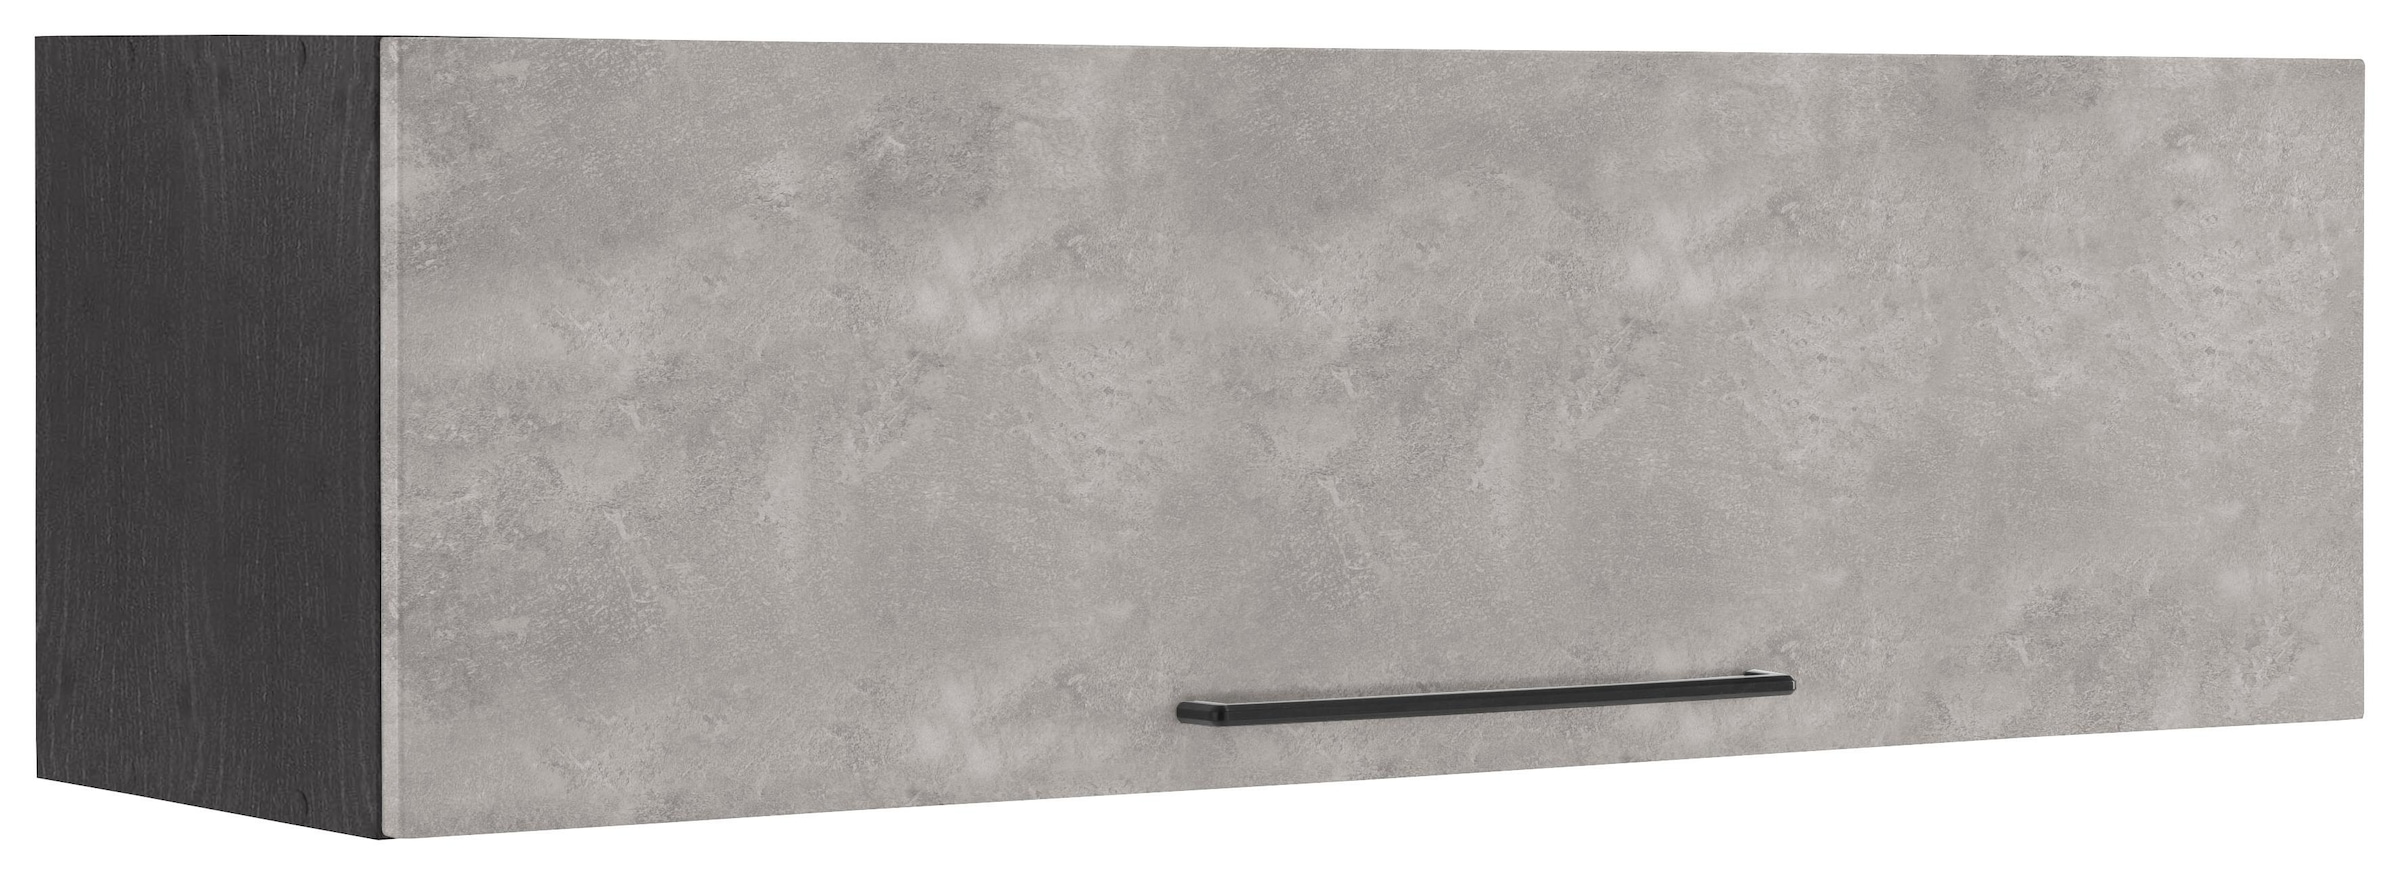 HELD MÖBEL Klapphängeschrank "Tulsa", 110 cm breit, mit 1 Klappe, schwarzer Metallgriff, MDF Front